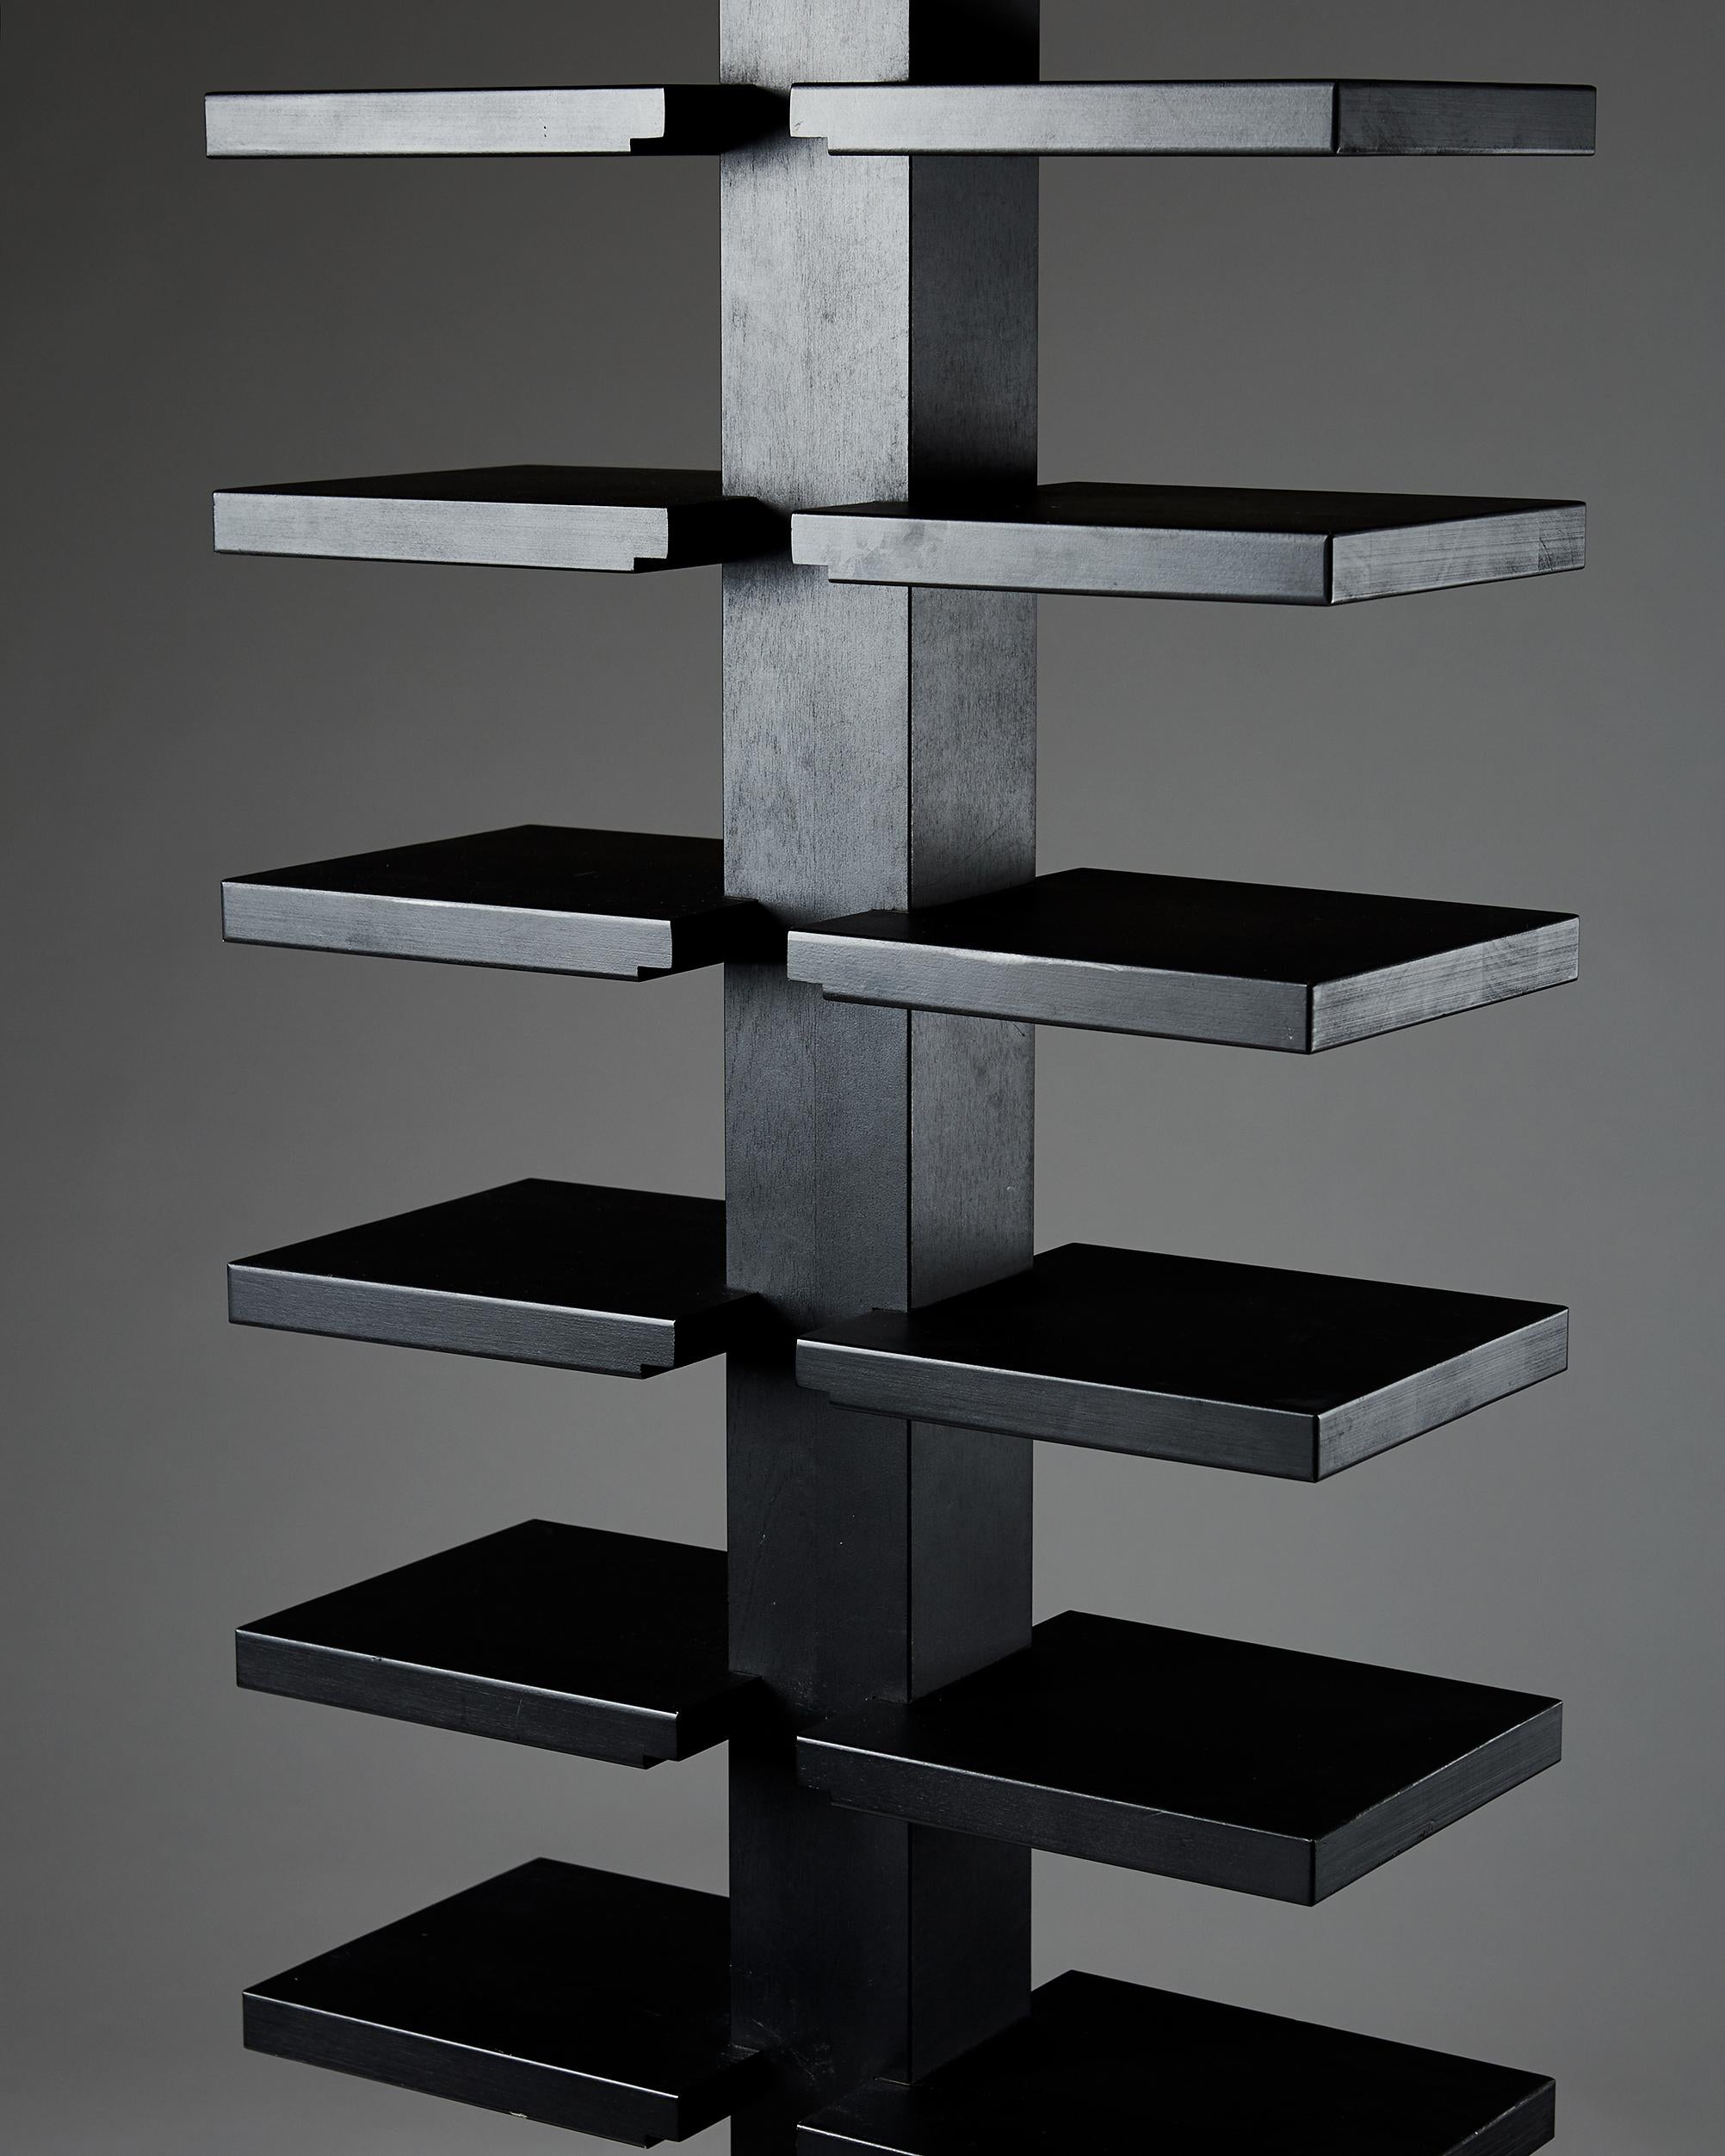 Lacquered Bookshelf “Double Pilaster” designed by John Kandell for Källemo, Sweden, 1990